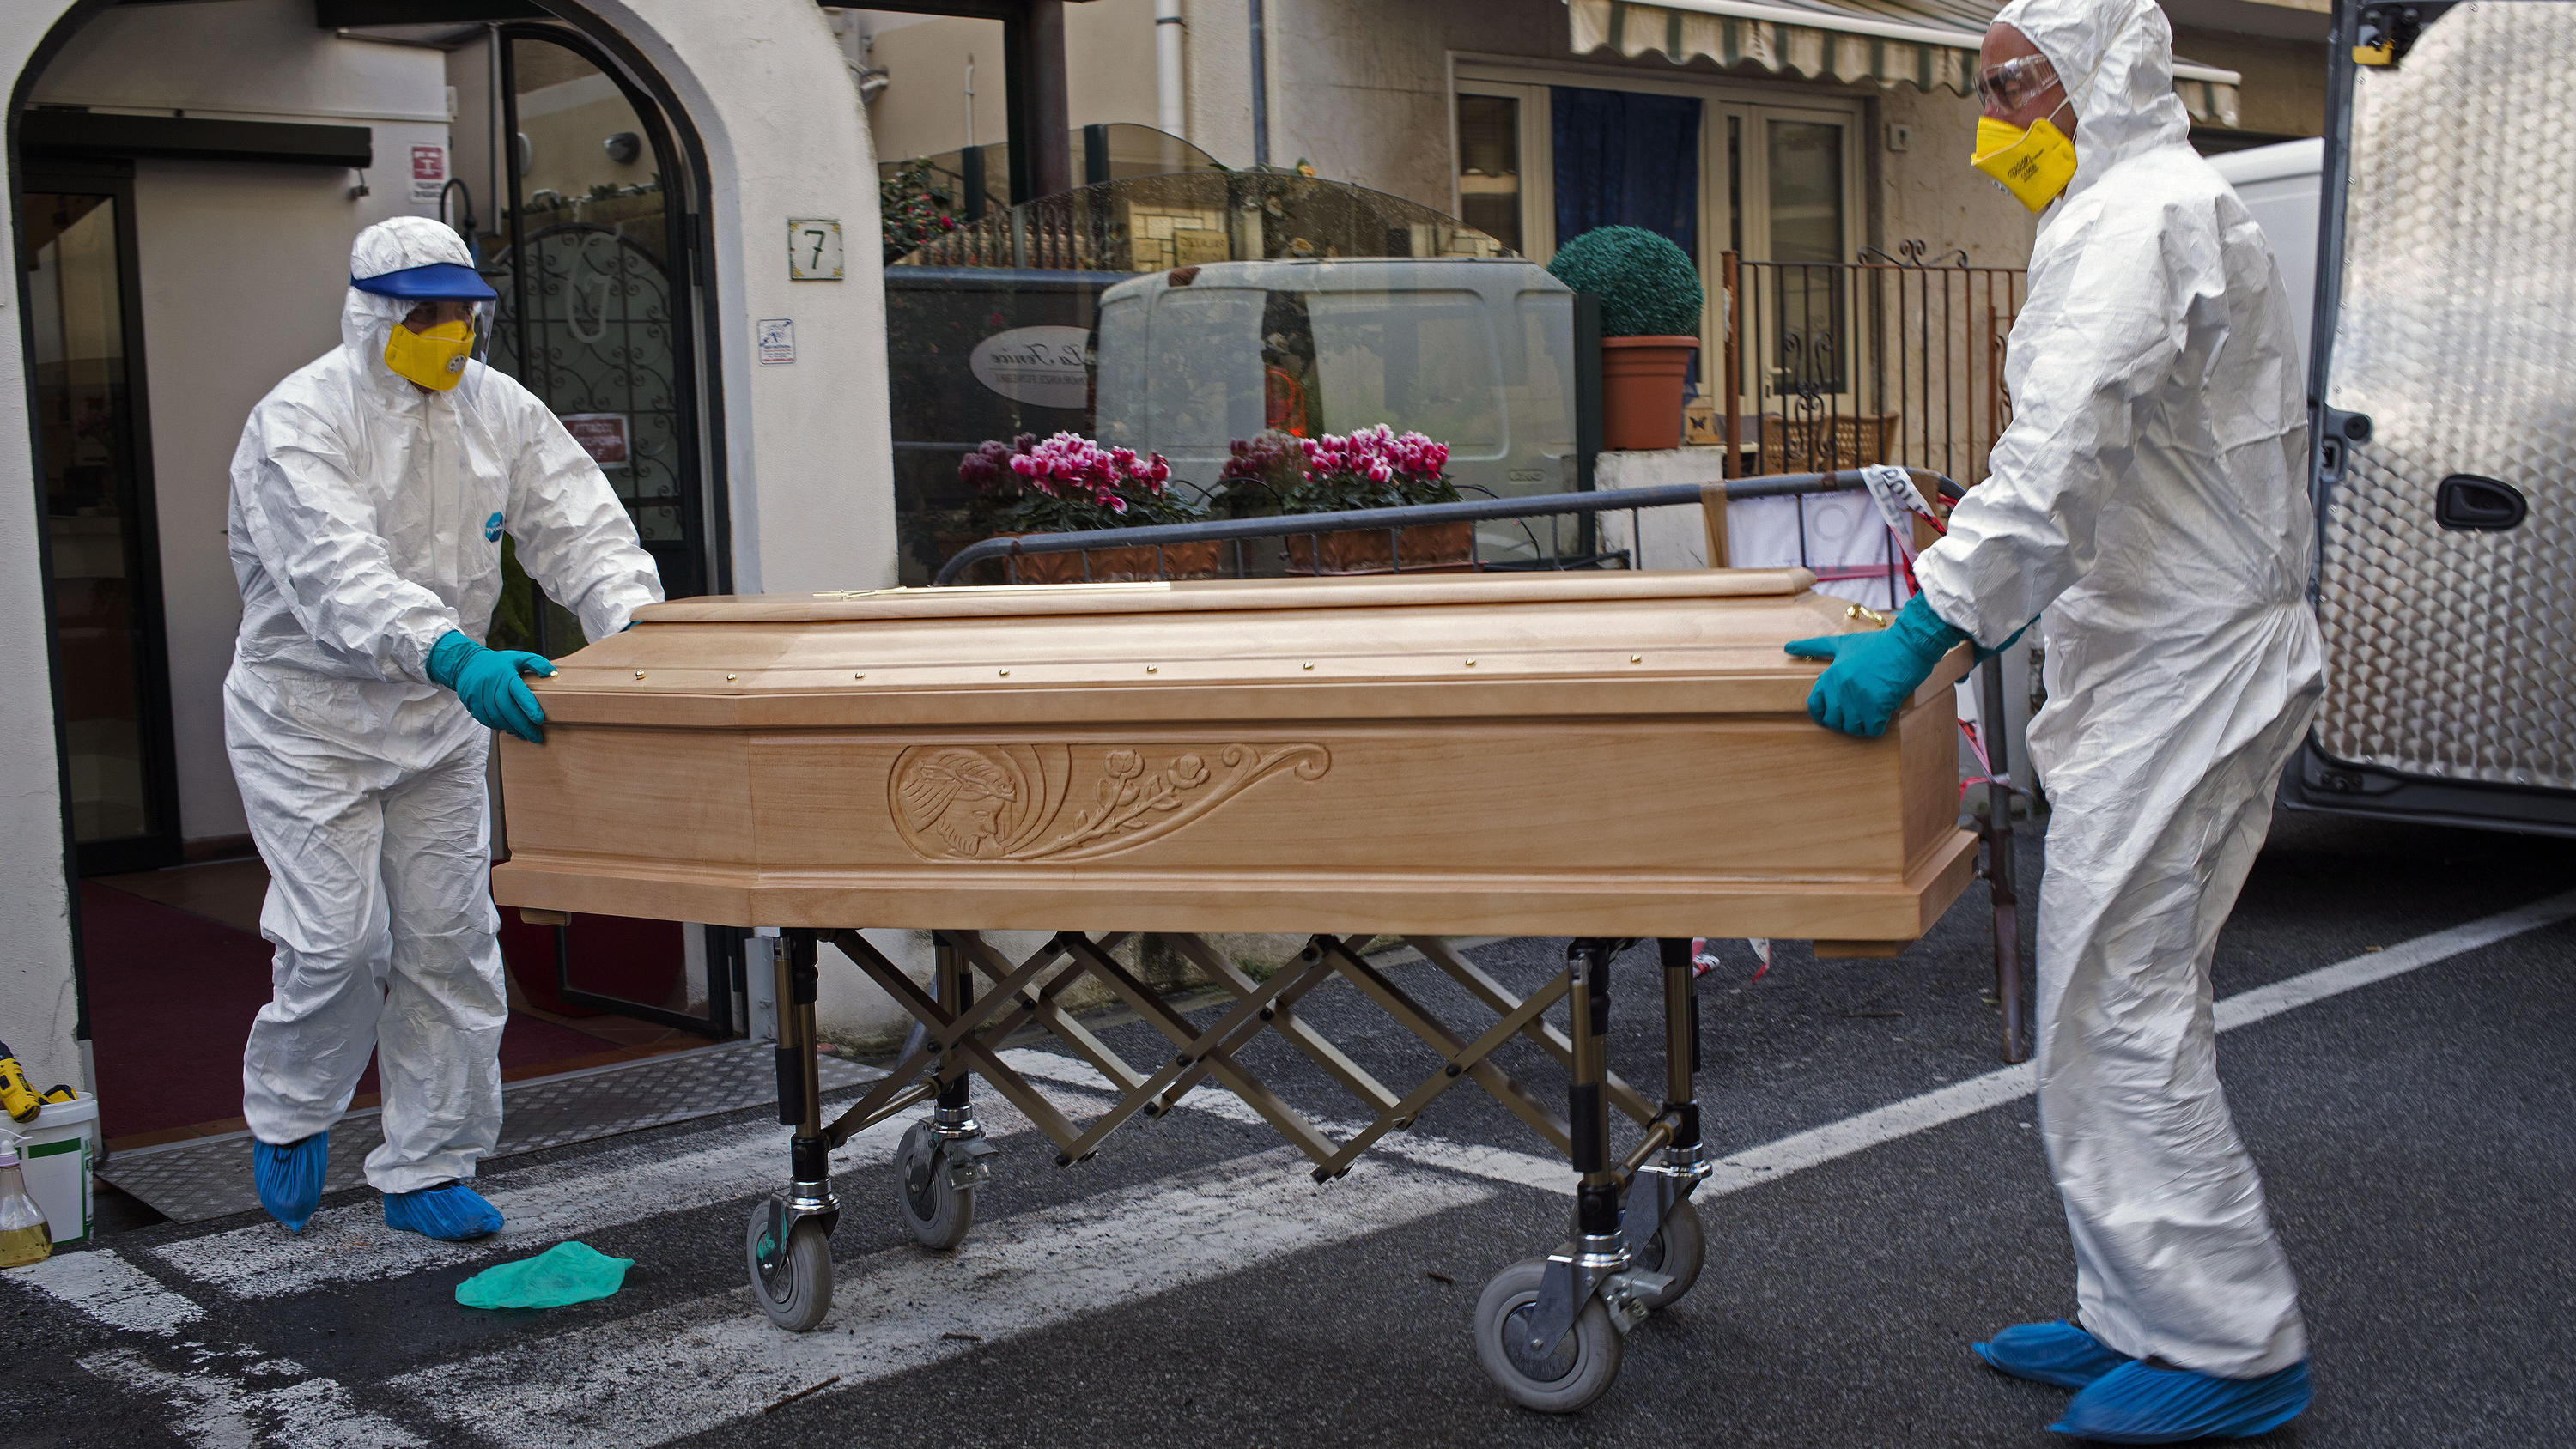 01.03.2020, Italien, Laigueglia: Medizinisches Personal in Schutzanzügen trägt einen Sarg mit dem Leichnam einer 87-jährigen Frau aus einem Hotel, nachdem sie in ihrem Zimmer verstorben ist. Die Frau, die zu einer Gruppe älterer Touristen aus der Reg